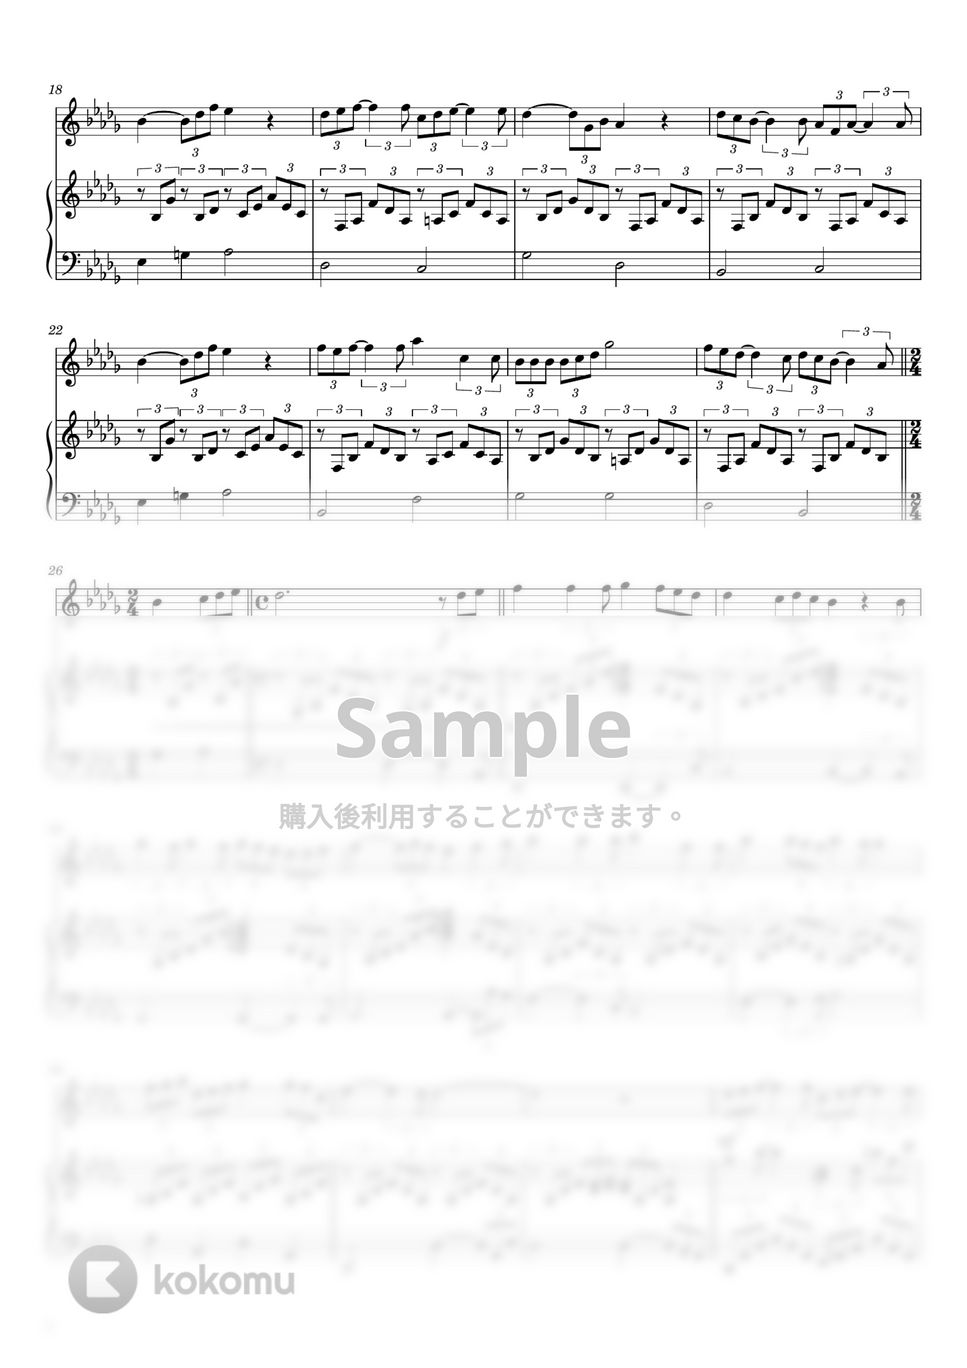 中島みゆき - 時代 (フルート&ピアノ伴奏) by PiaFlu